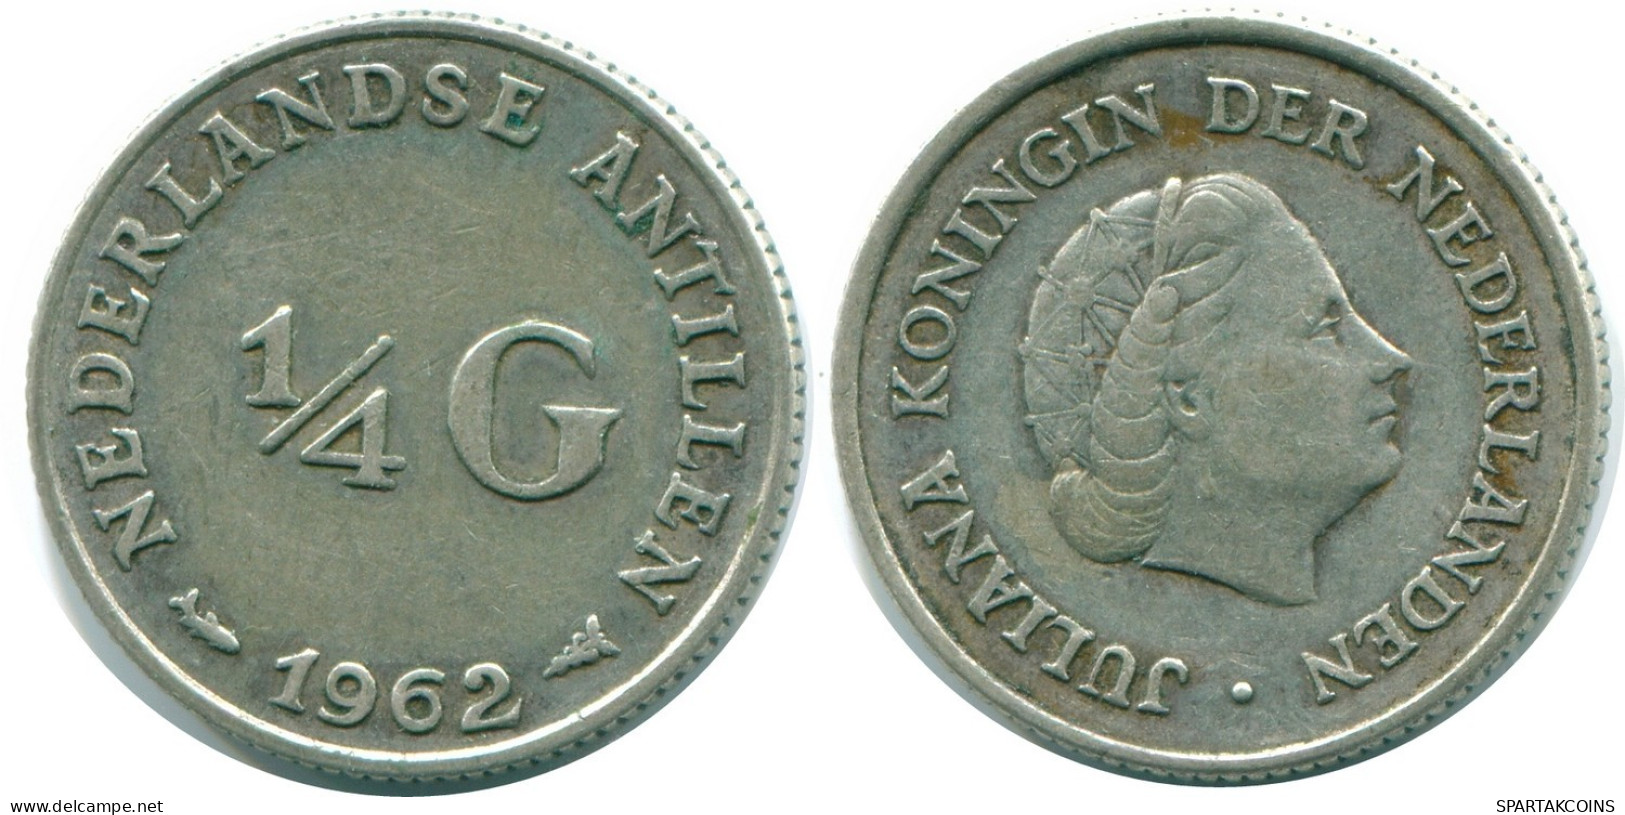 1/4 GULDEN 1962 NIEDERLÄNDISCHE ANTILLEN SILBER Koloniale Münze #NL11135.4.D.A - Antillas Neerlandesas